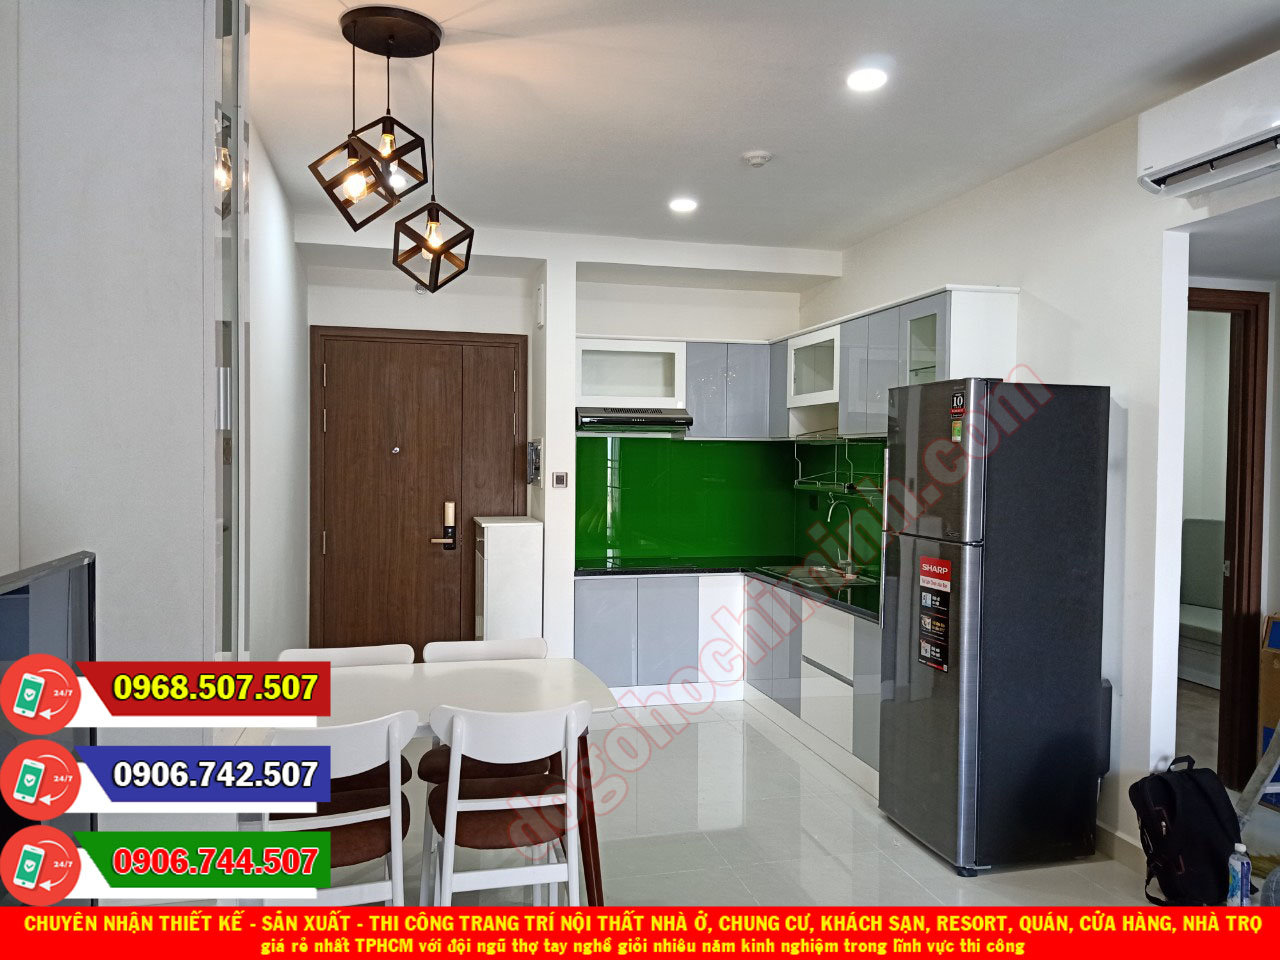 Thi công nội thất nhà ở chung cư giá rẻ nhất tại quận Gò Vấp - TPHCM